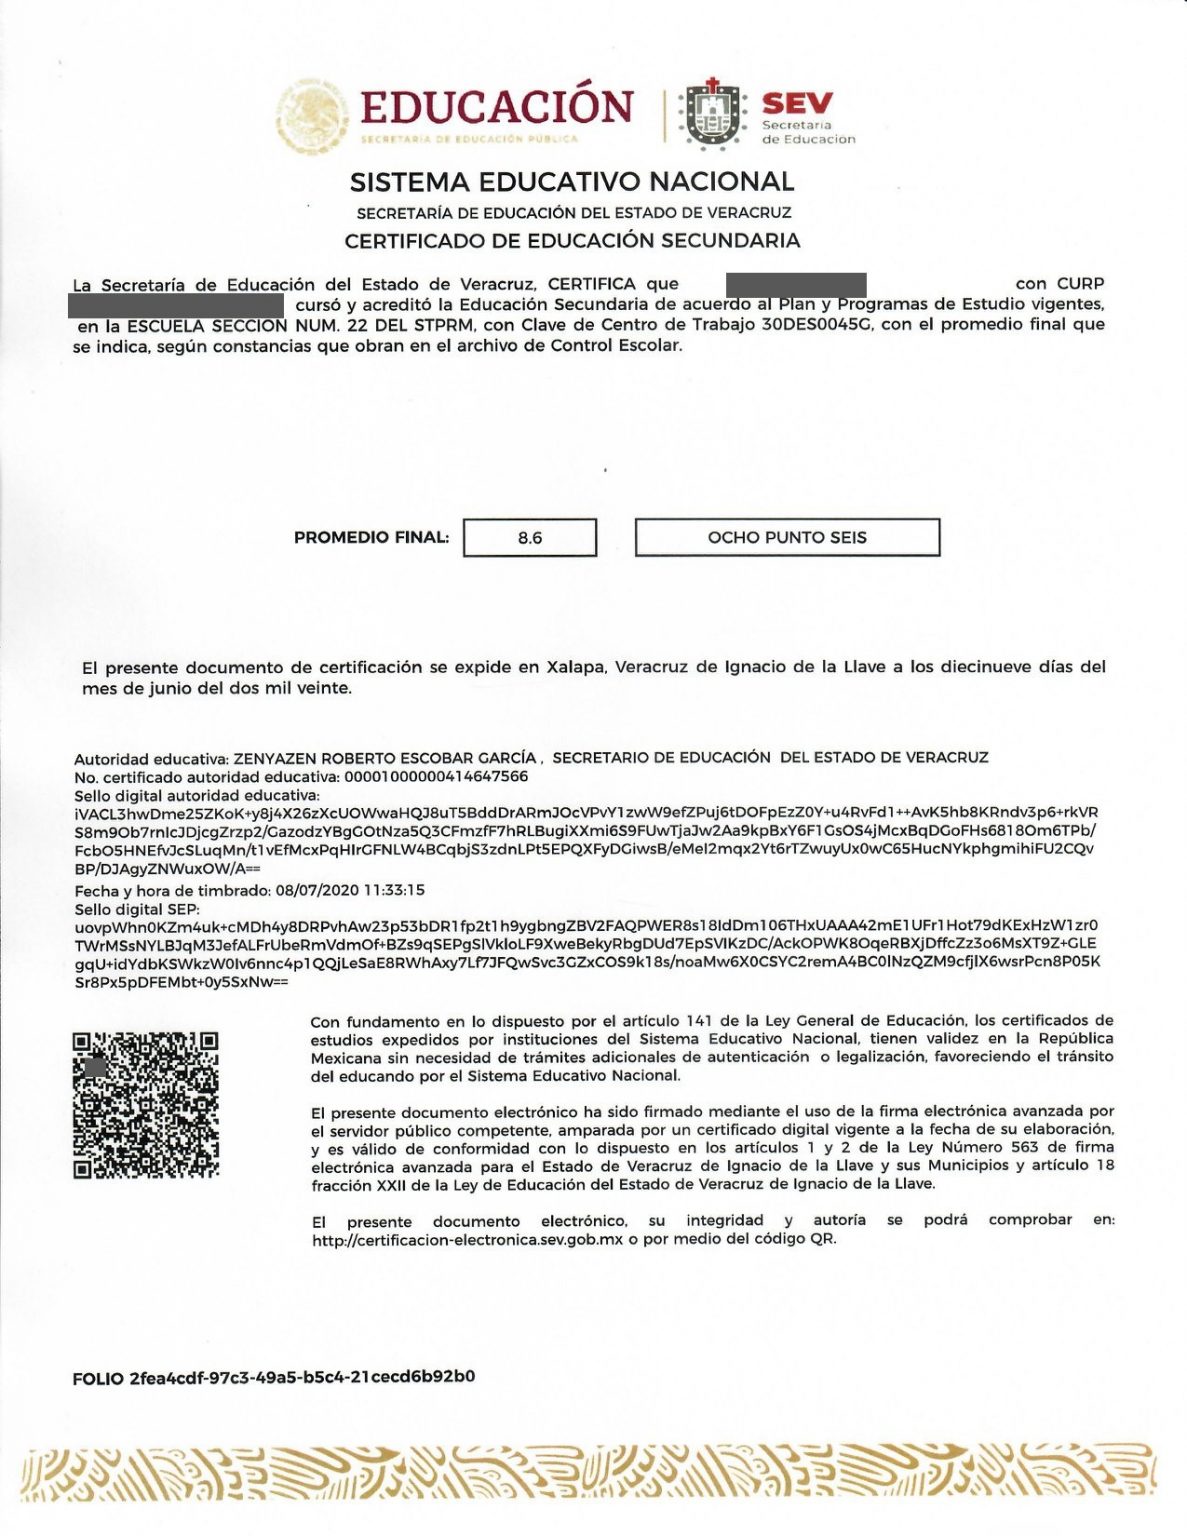 Cómo consultar y verificar todos los certificados de la SEP - Tramitando.mx